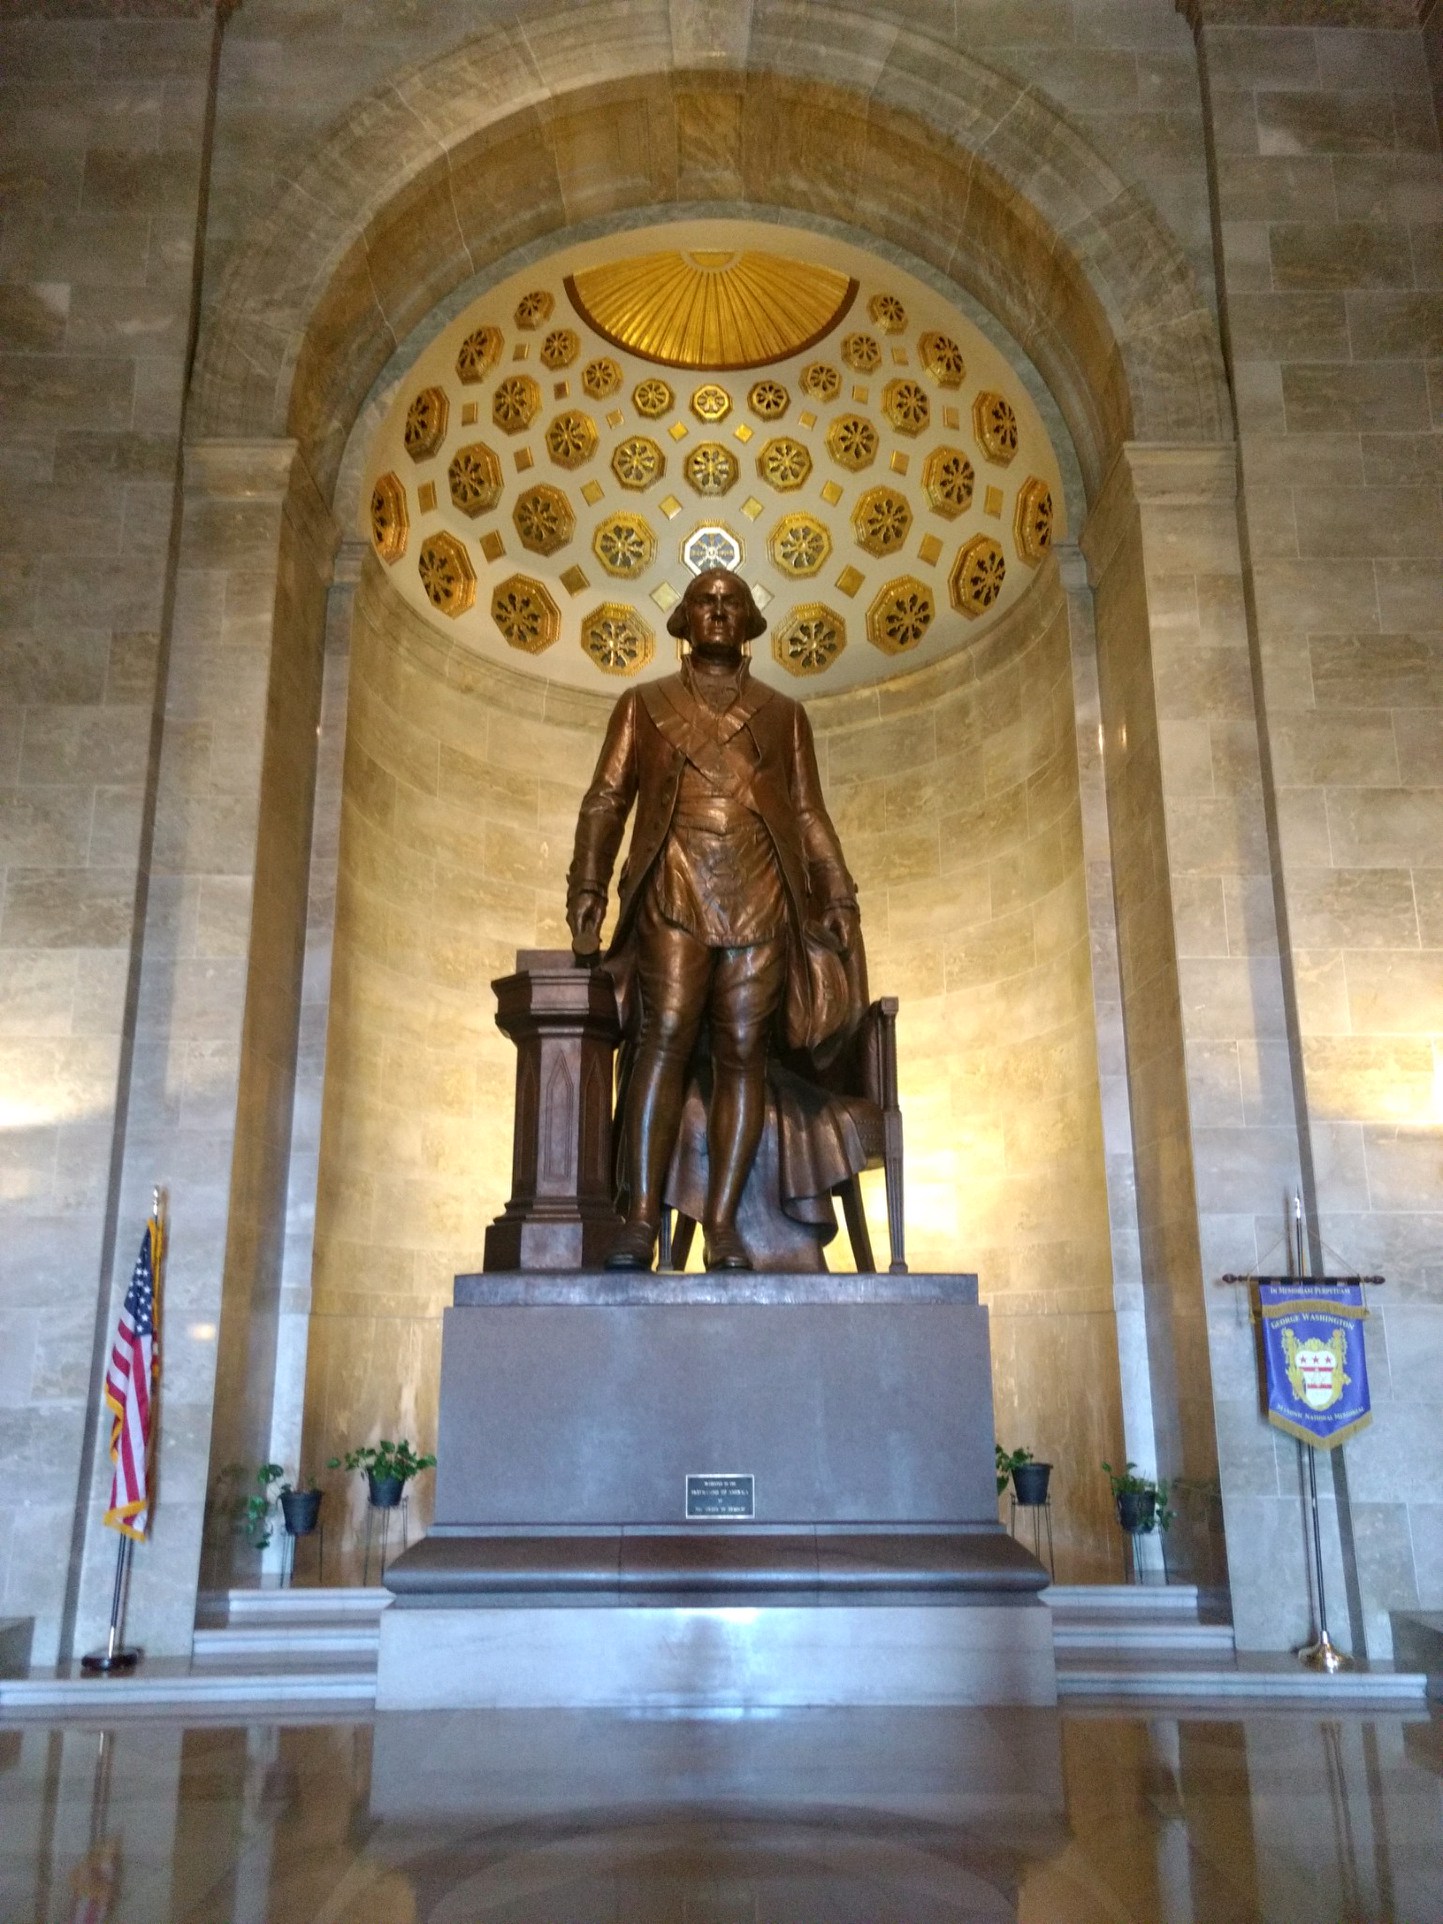 Inside the George Washington Masonic National Monument